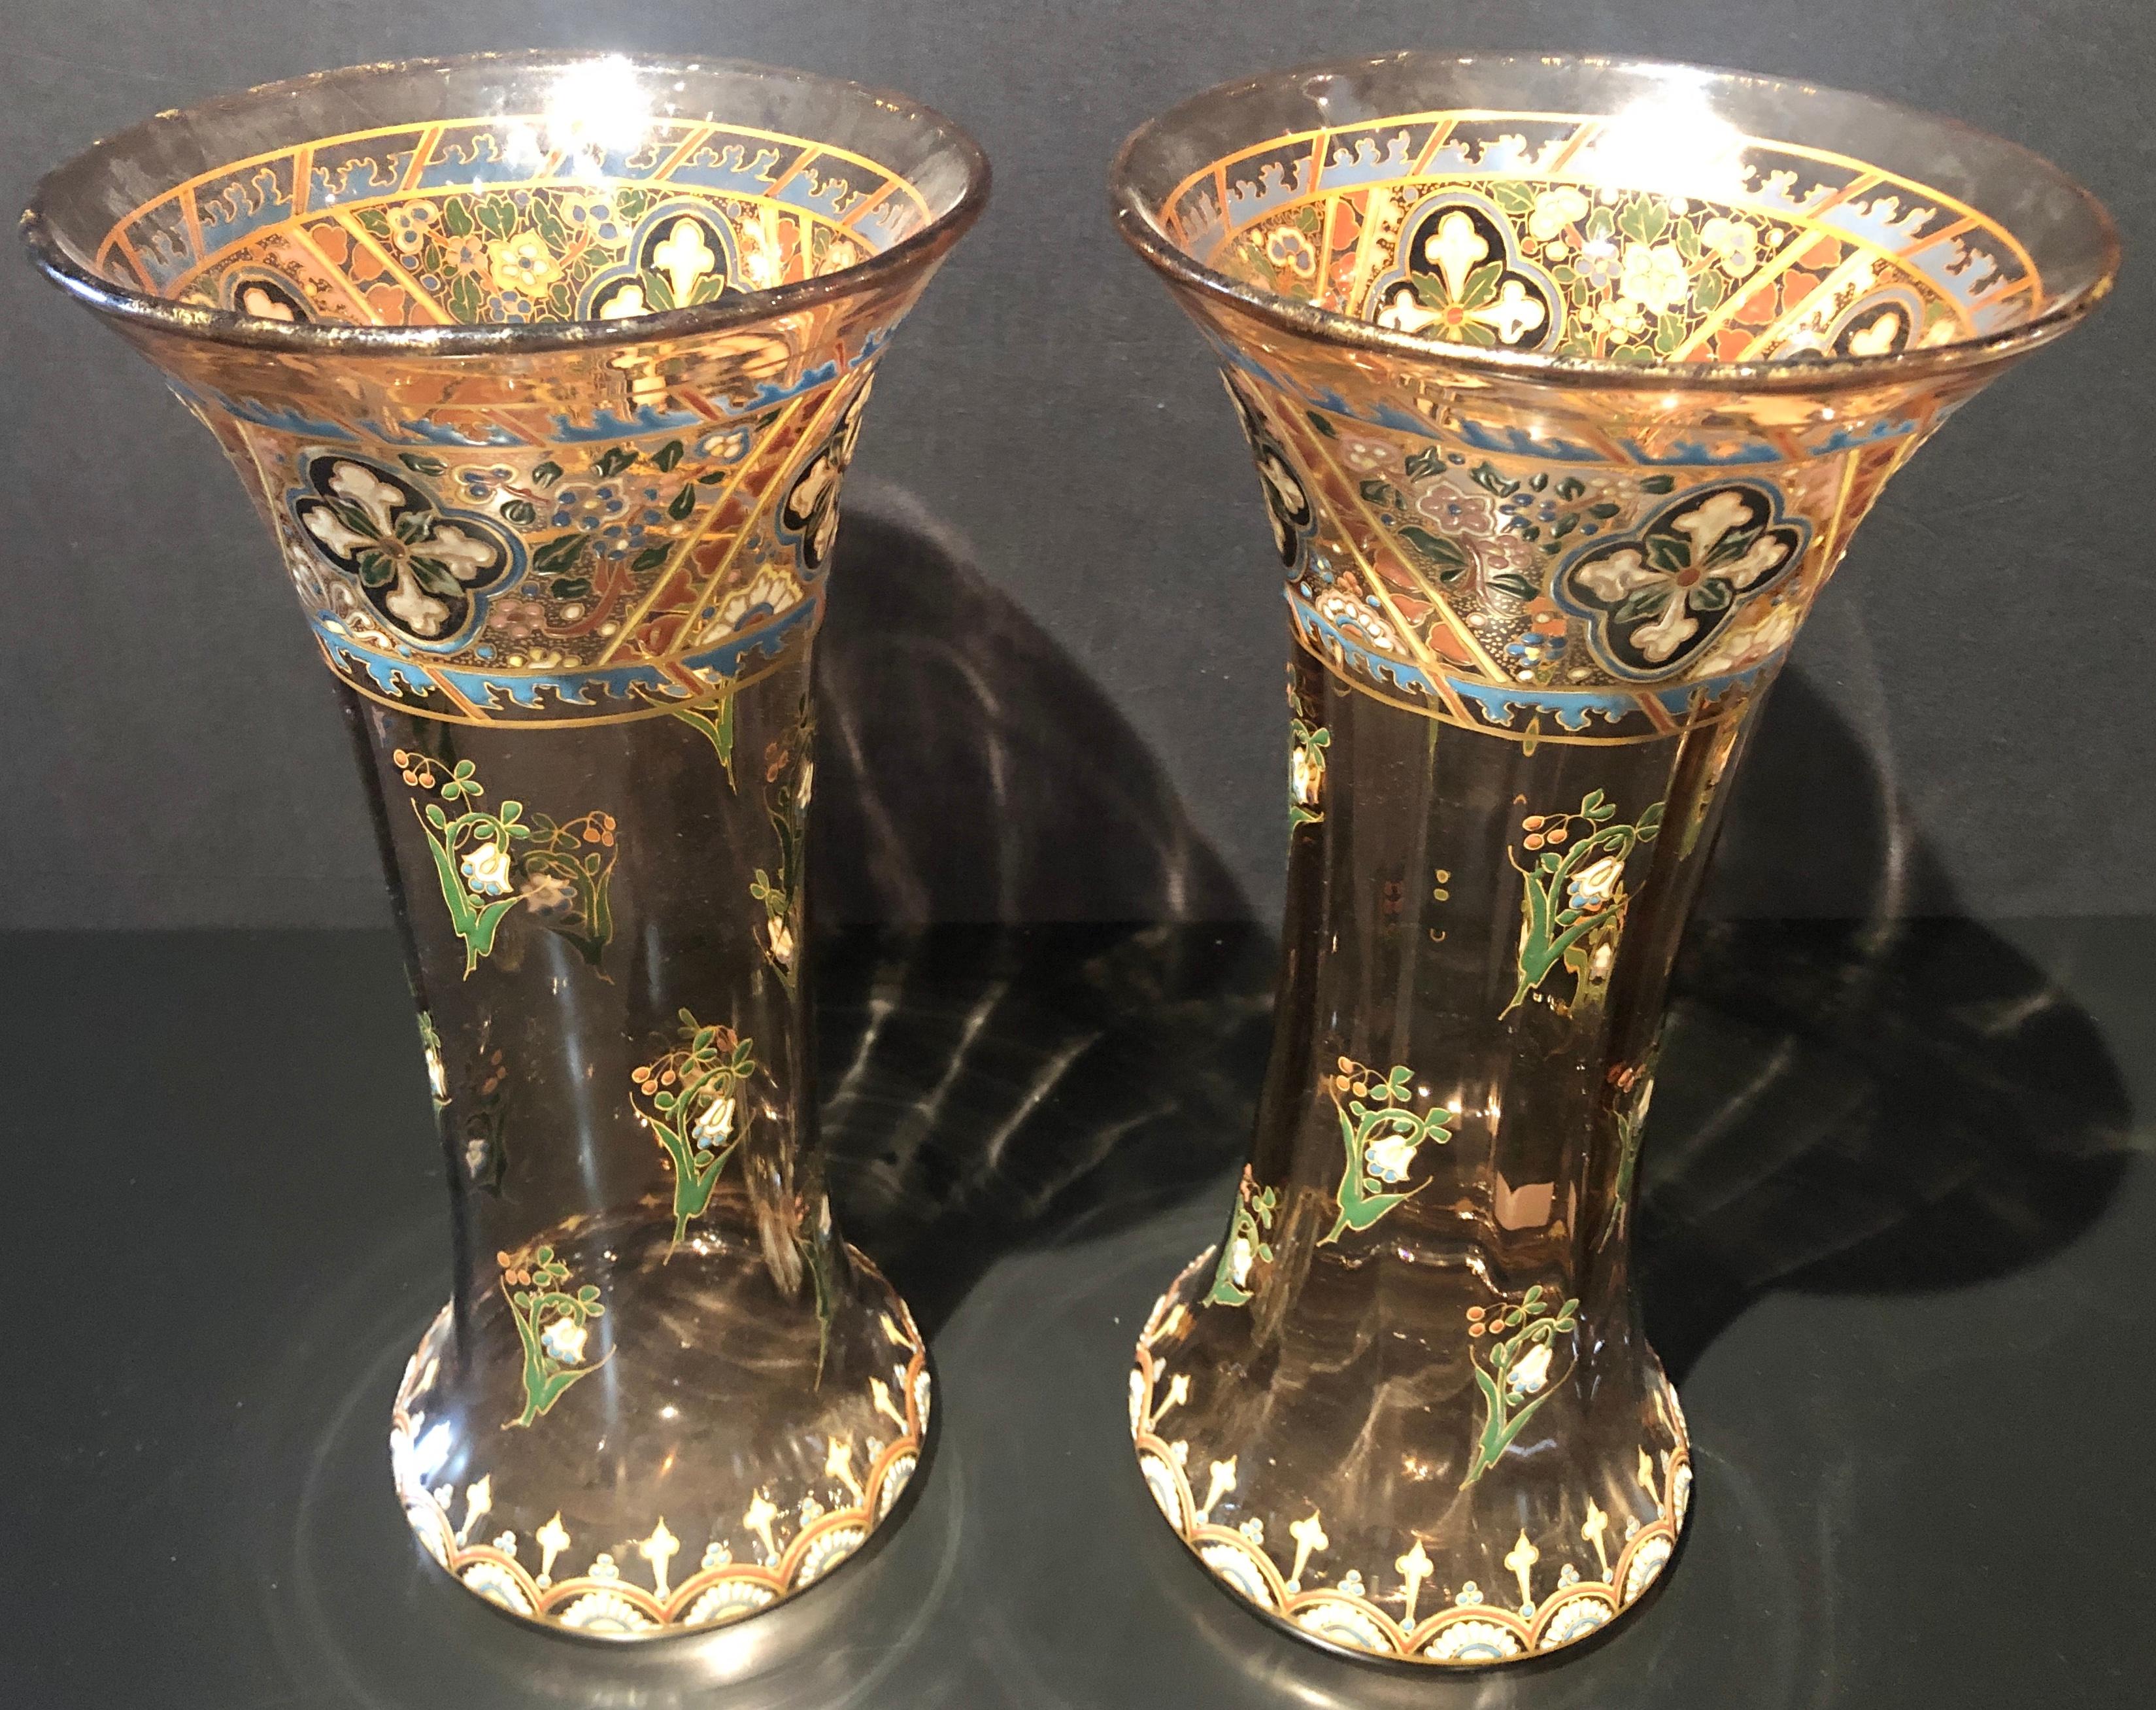 Paar antike französische Vasen mit Juwelen im Stil von Emile Galle. Einfach die schönsten Blumenvasen, die man sich wünschen kann. Das gesamte Bernsteinglas ist mit Juwelen besetzt, die ein farbenfrohes, erhabenes florales und dekoratives Design